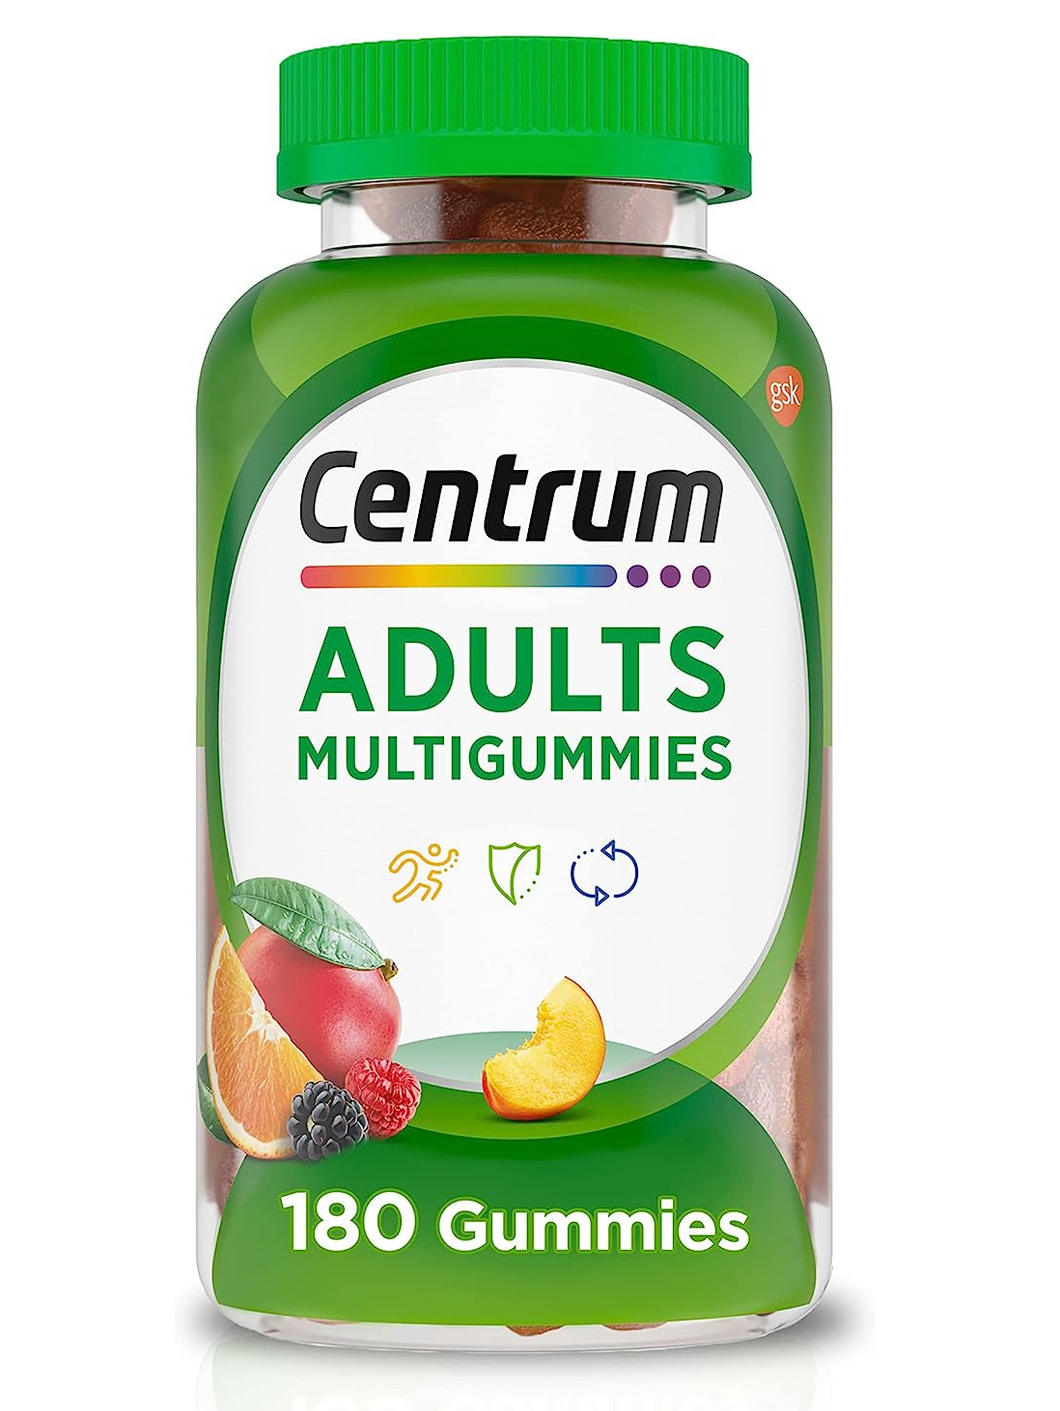 Multivitamínico en gomitas para adultos, Centrum, también incluye Vitaminas B12, D, E, y Biotina. 180 gomitas